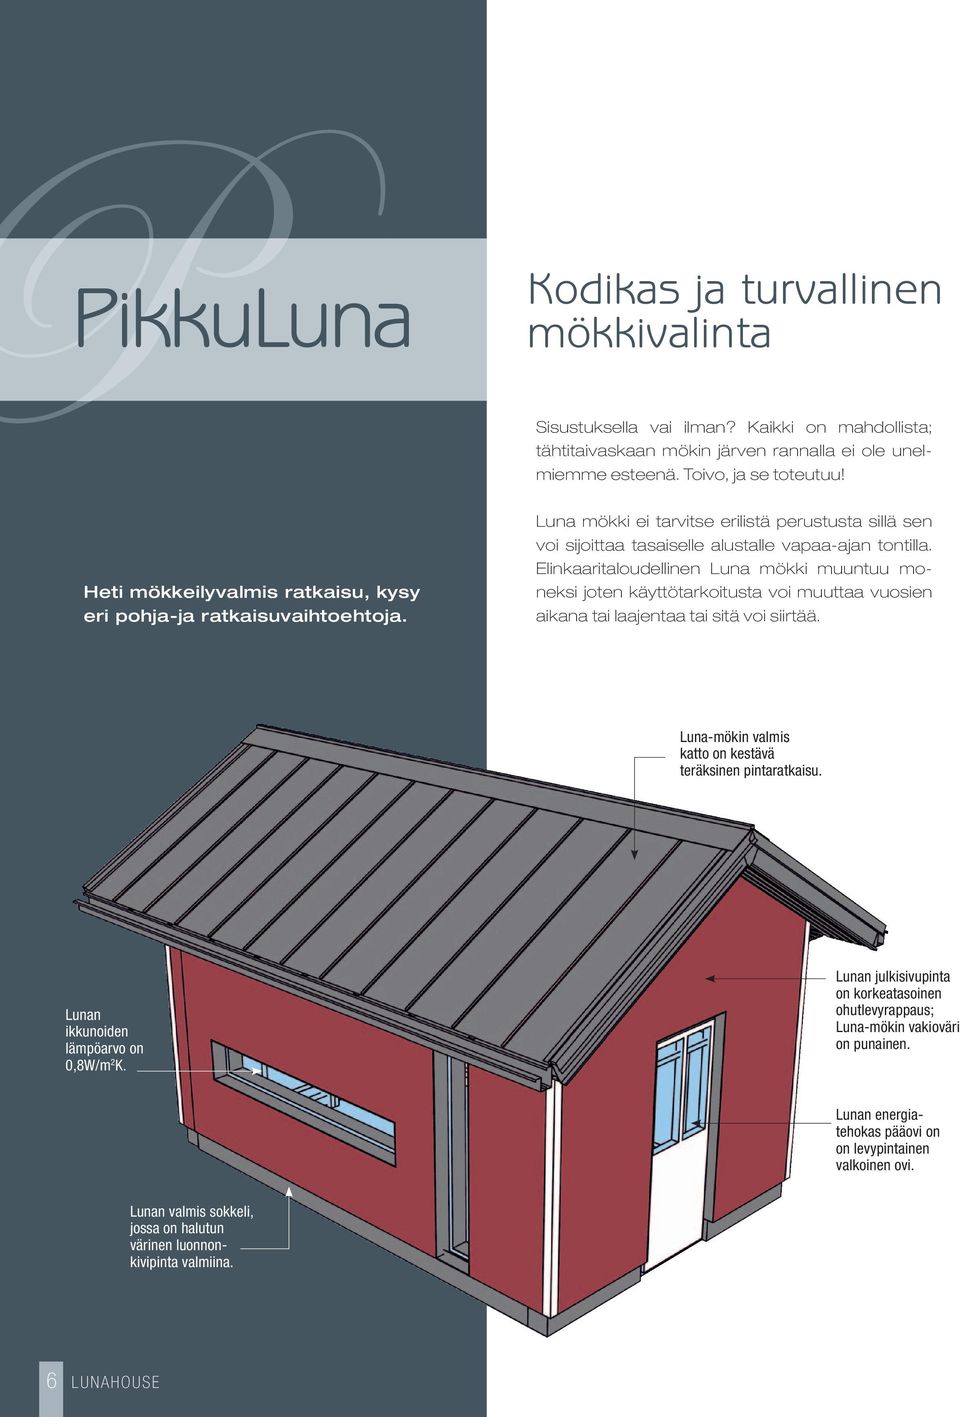 Elinkaaritaloudellinen Luna mökki muuntuu moneksi joten käyttötarkoitusta voi muuttaa vuosien aikana tai laajentaa tai sitä voi siirtää. Luna-mökin valmis katto on kestävä teräksinen pintaratkaisu.